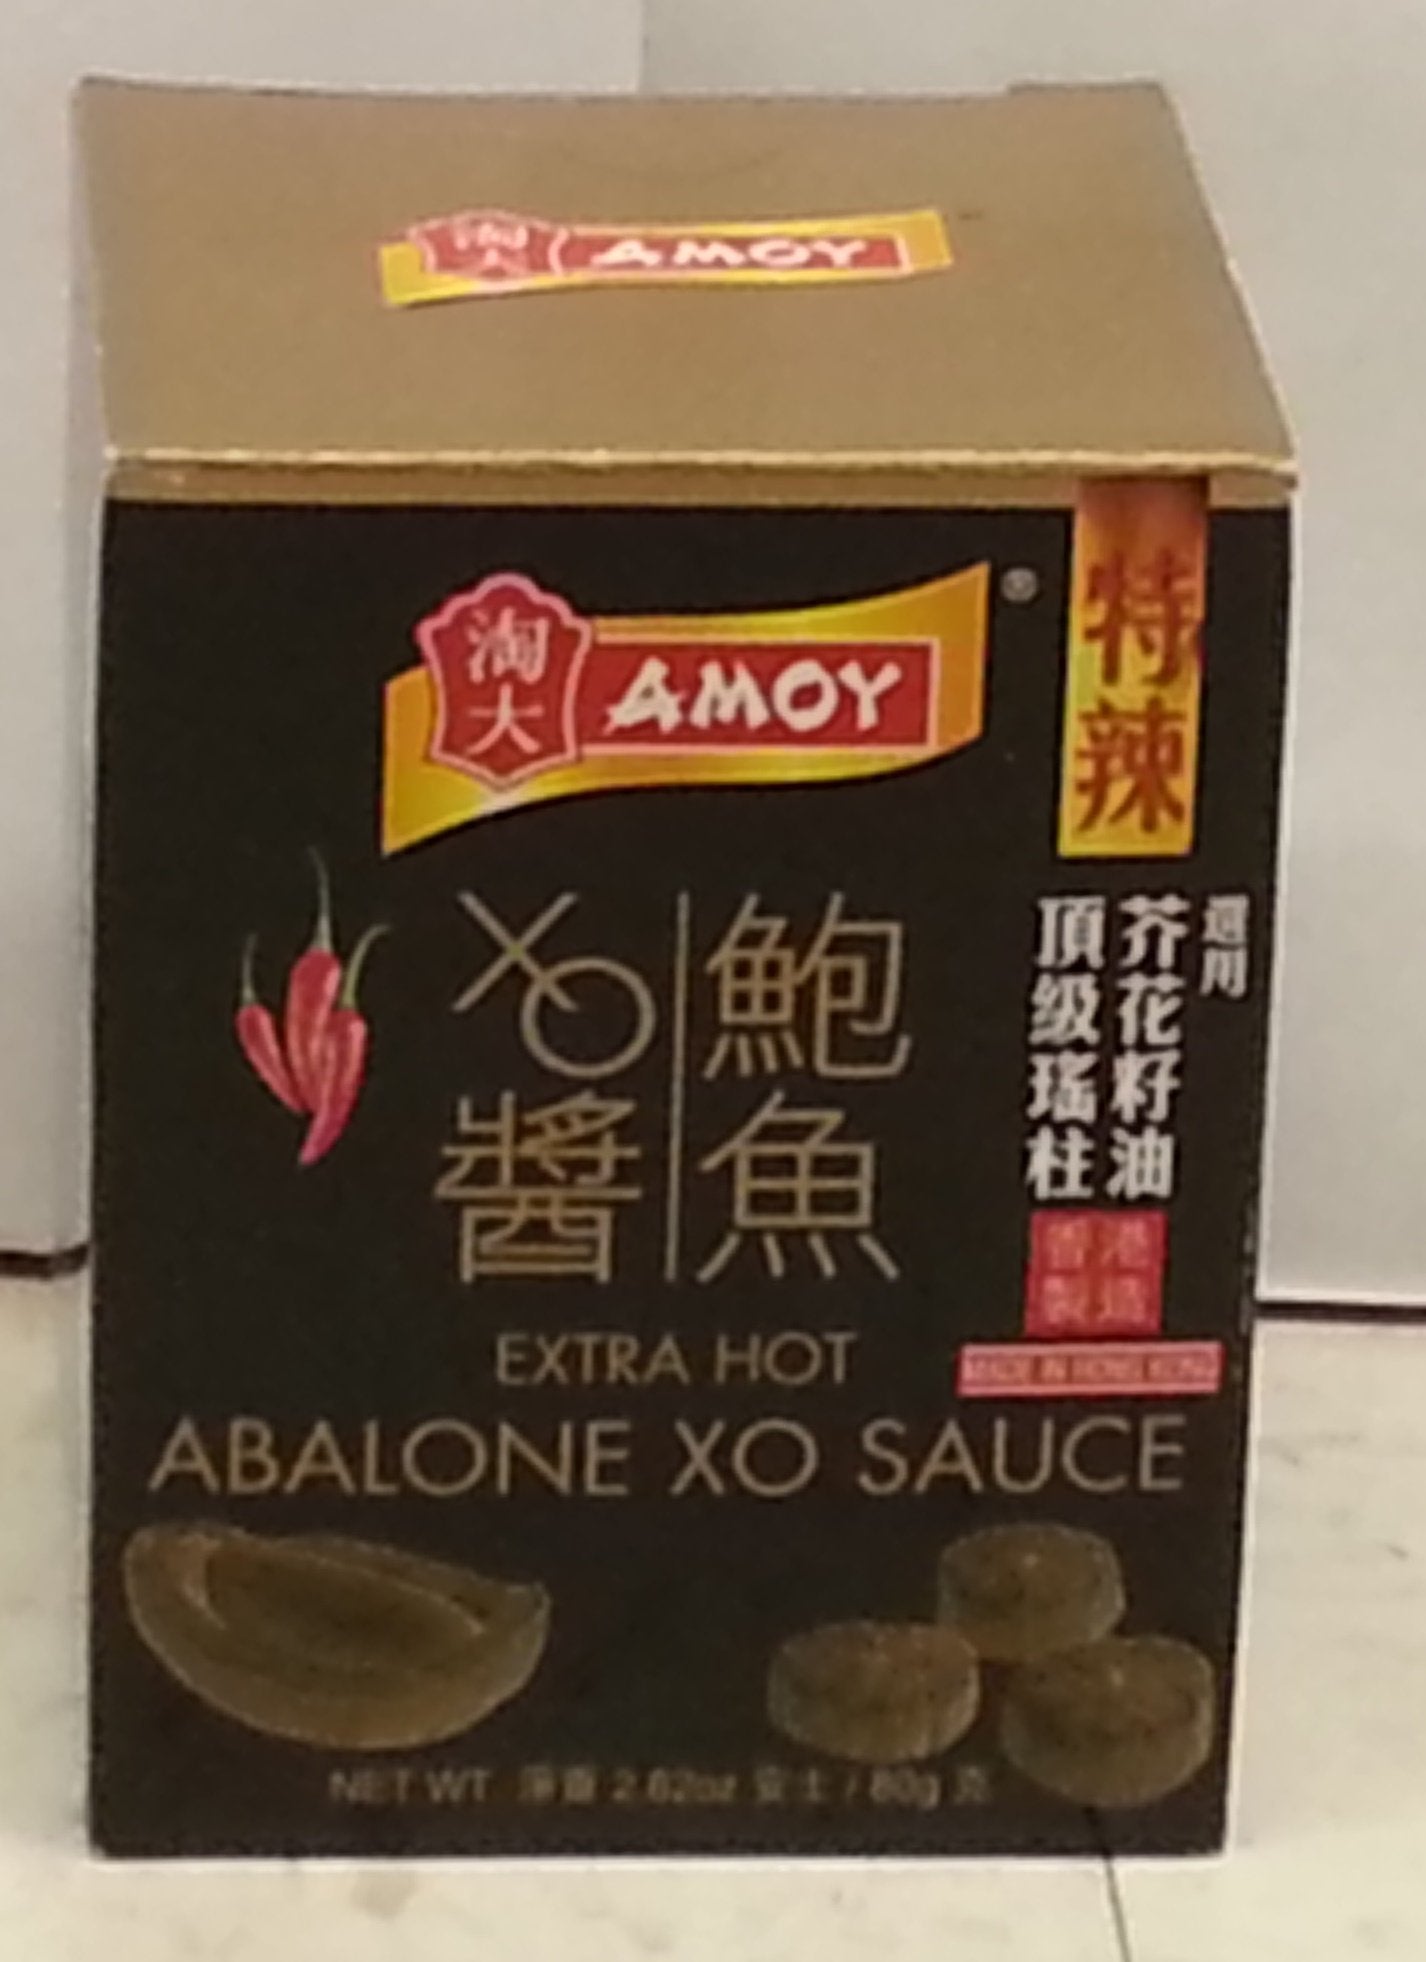 Amoy Extra Hot Abalone XO Sauce 2.8oz (2 Pack )